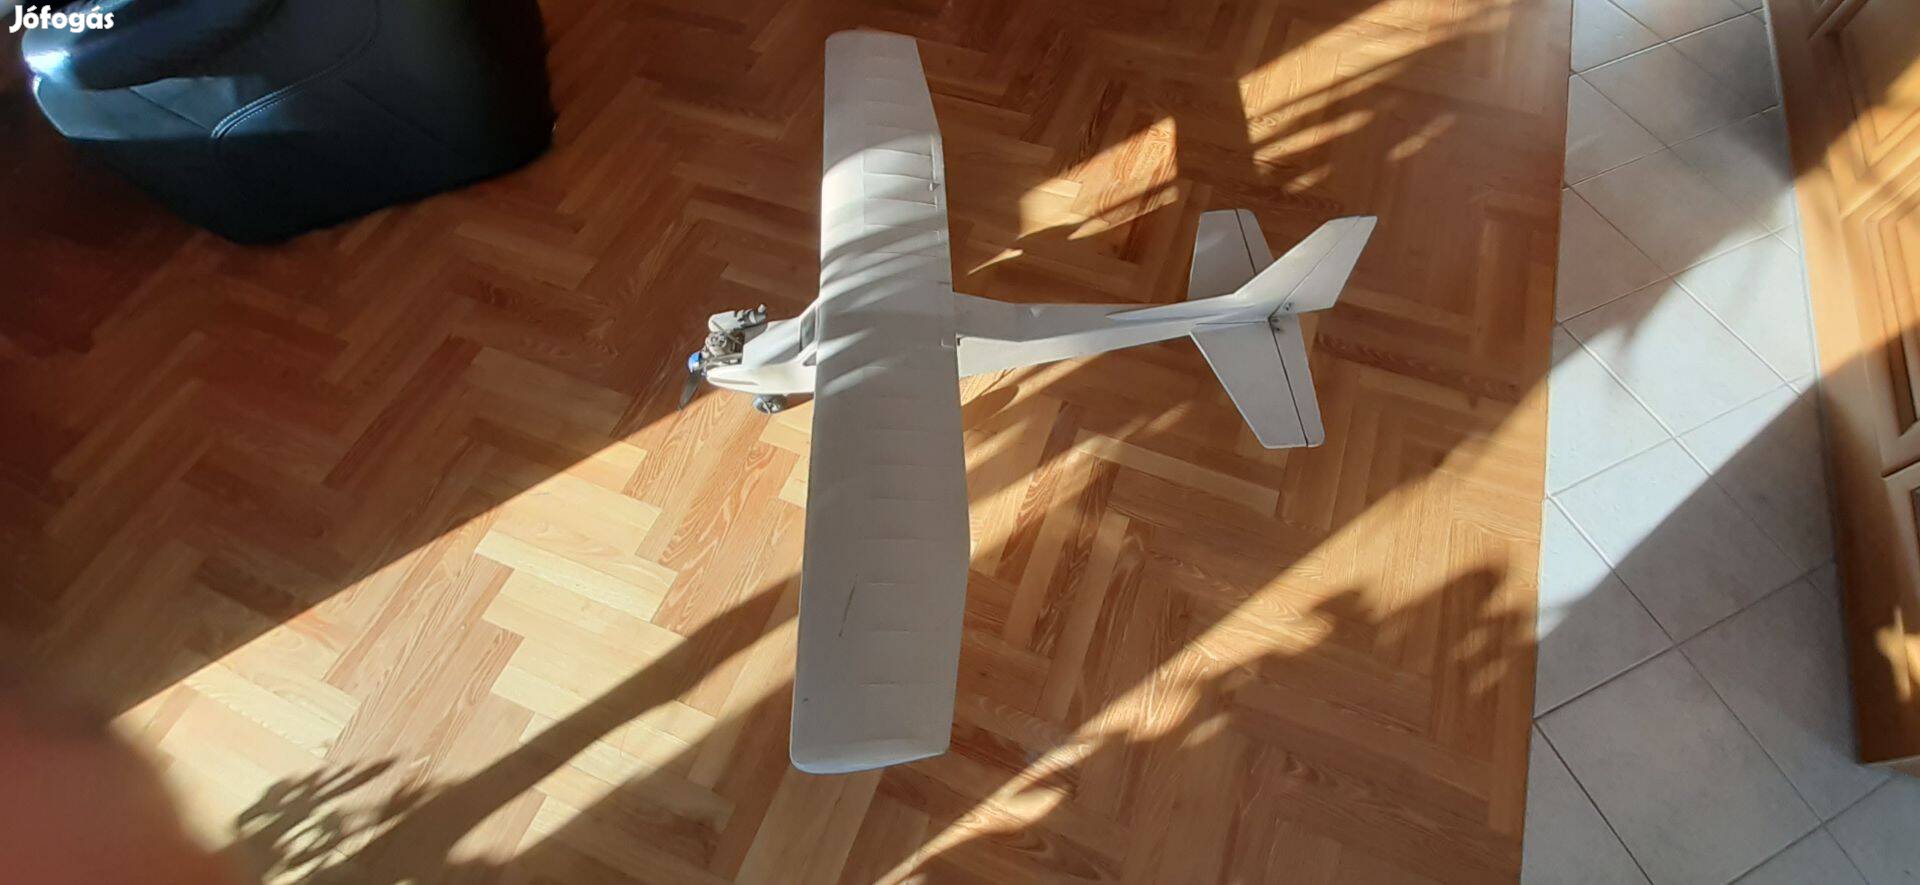 Nagyméretű repülőgép modell törzs 120 cm szárny 140 cm